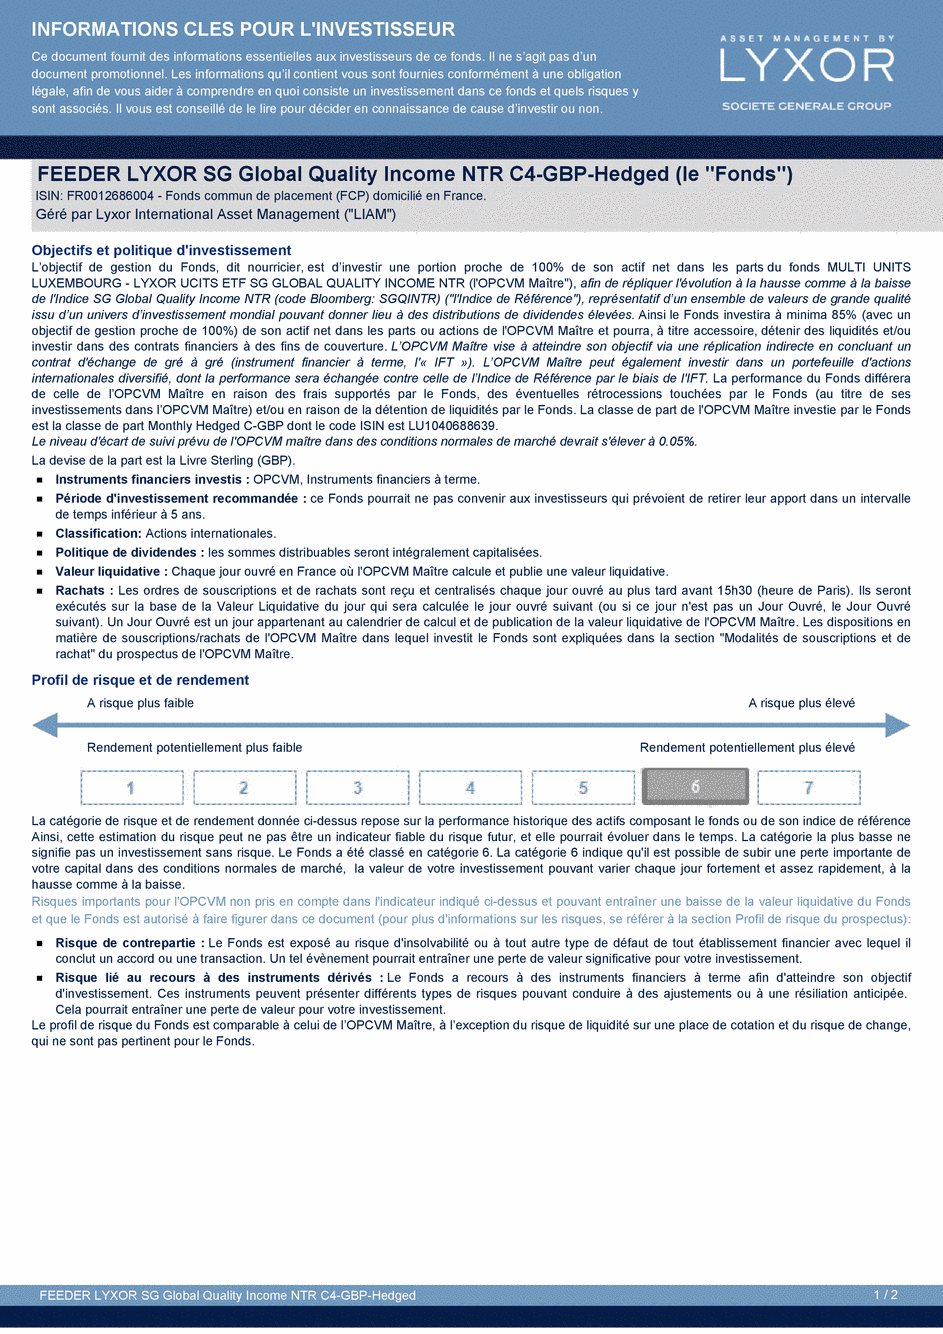 DICI FEEDER LYXOR SG GLOBAL QUALITY INCOME NTR C4-GBP-Hedged - 24/04/2015 - Français